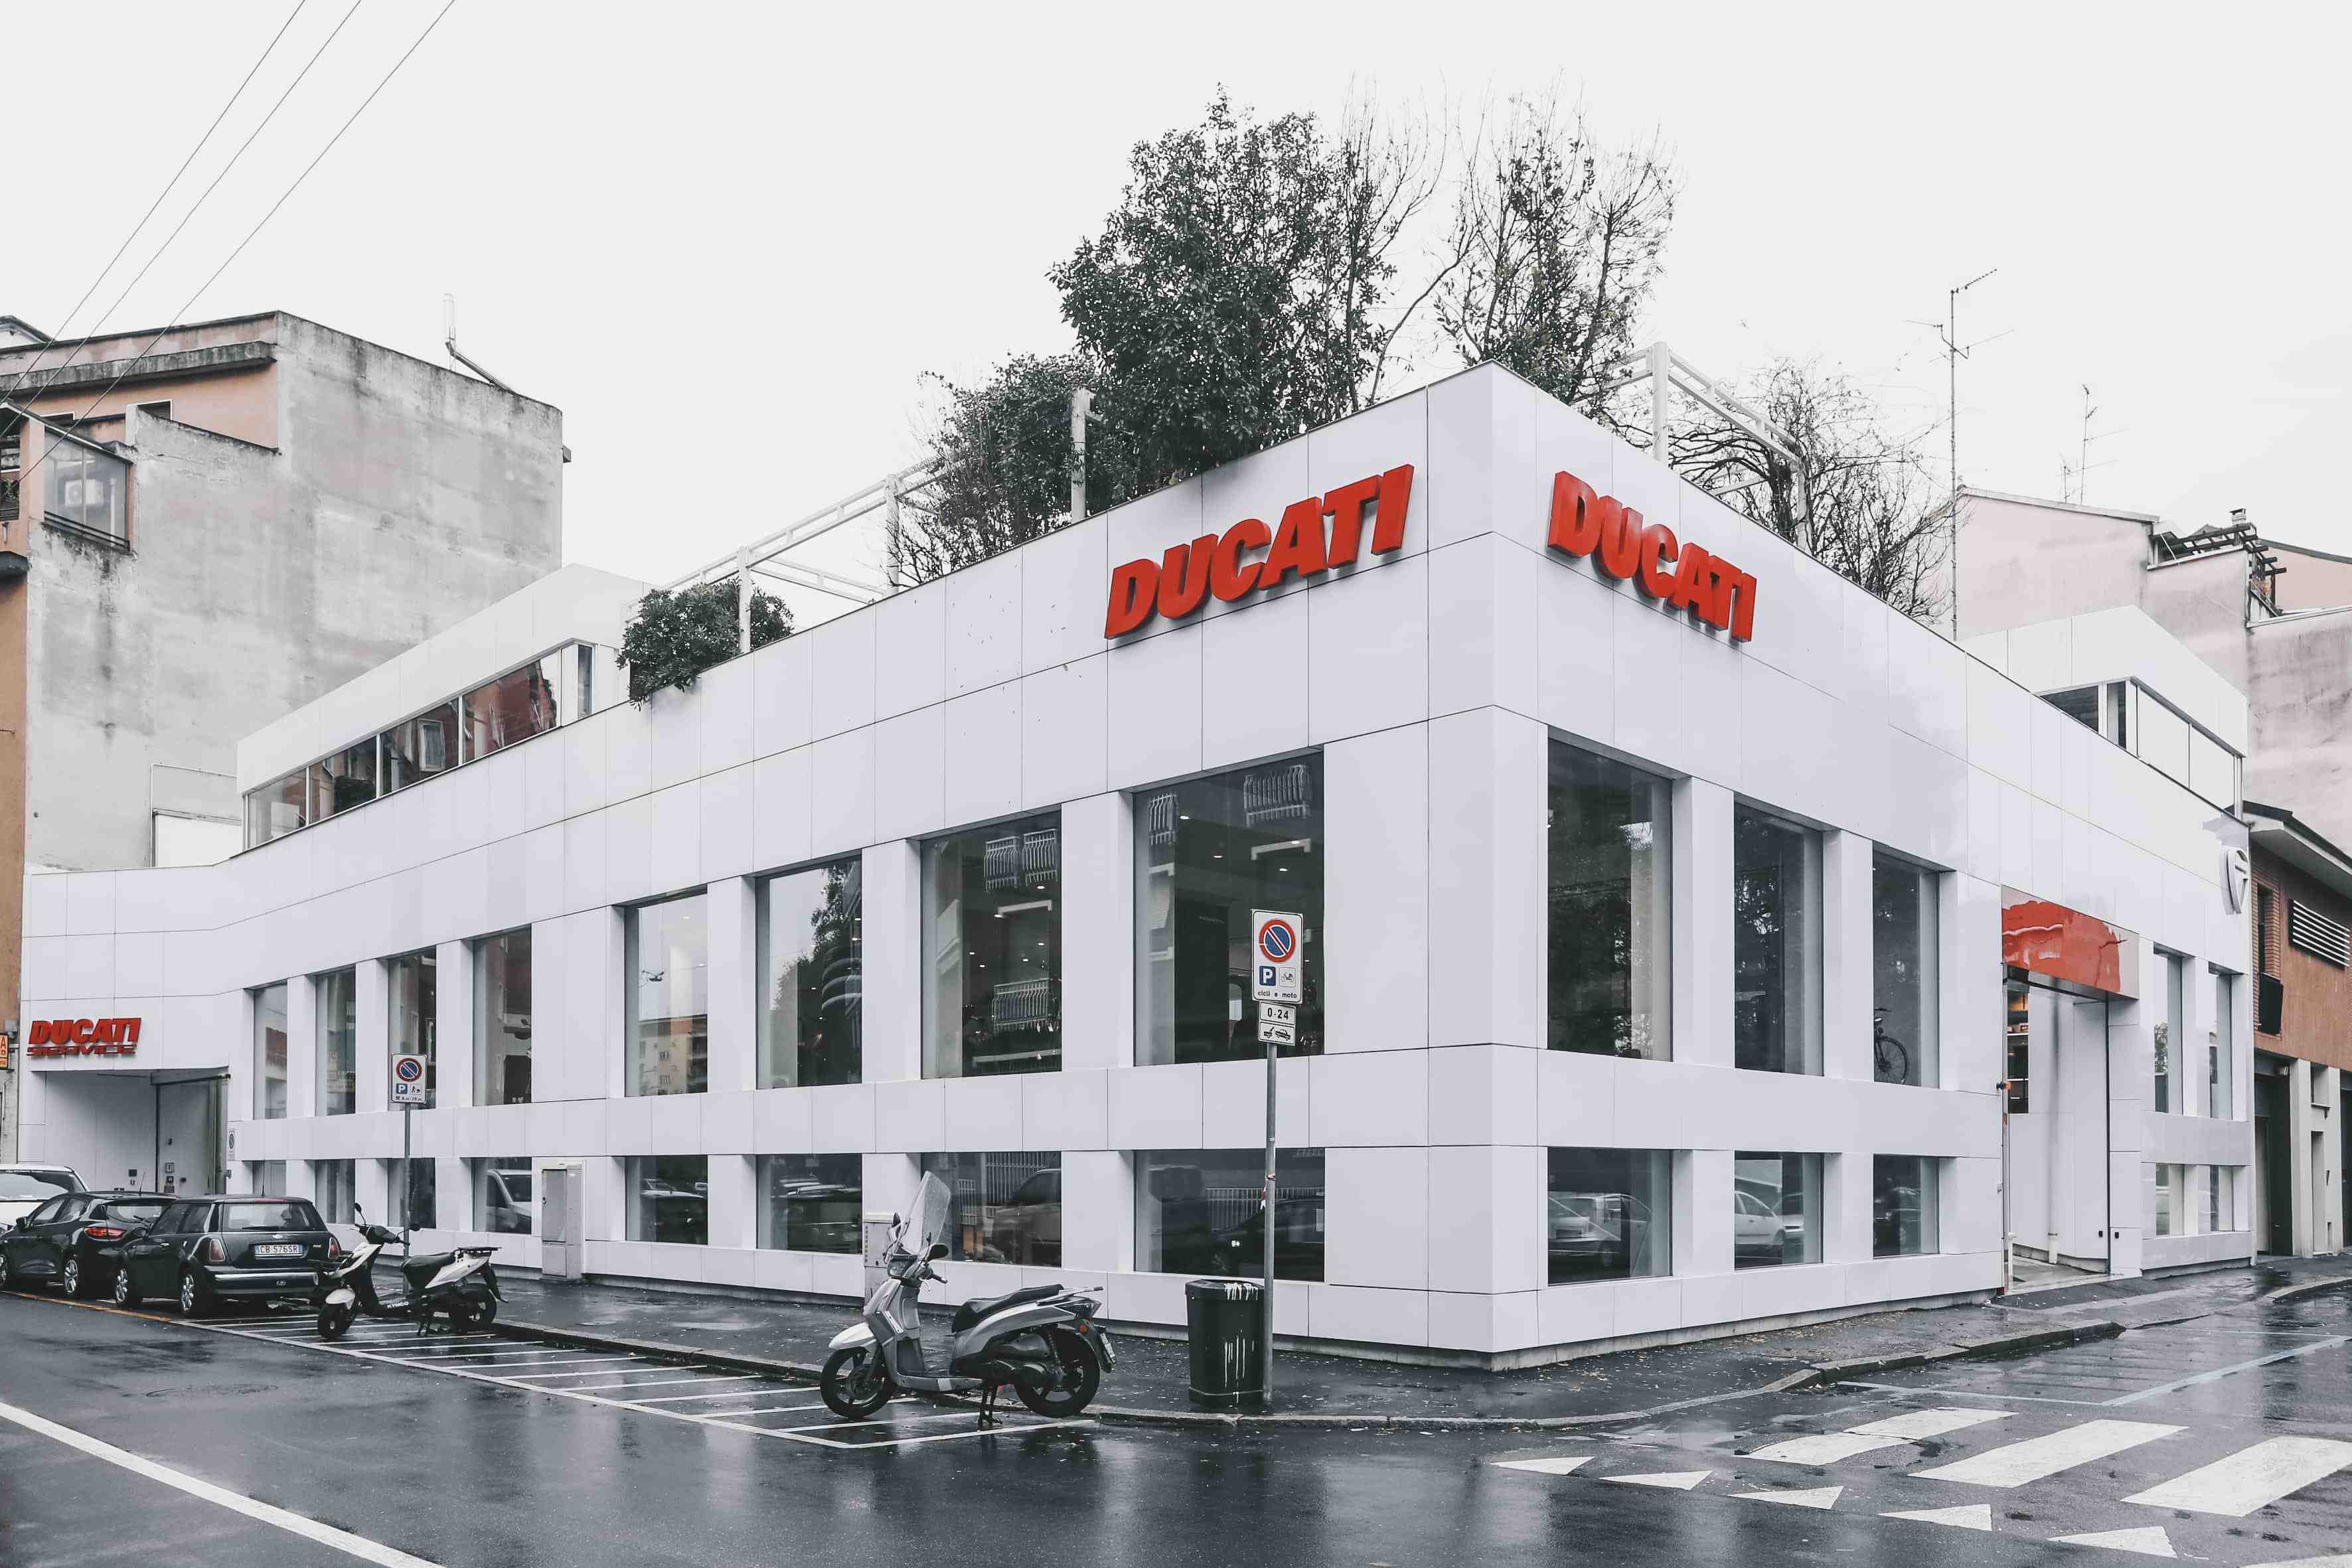 Negozio Ducati Milano Store - Progetto Zapparoli